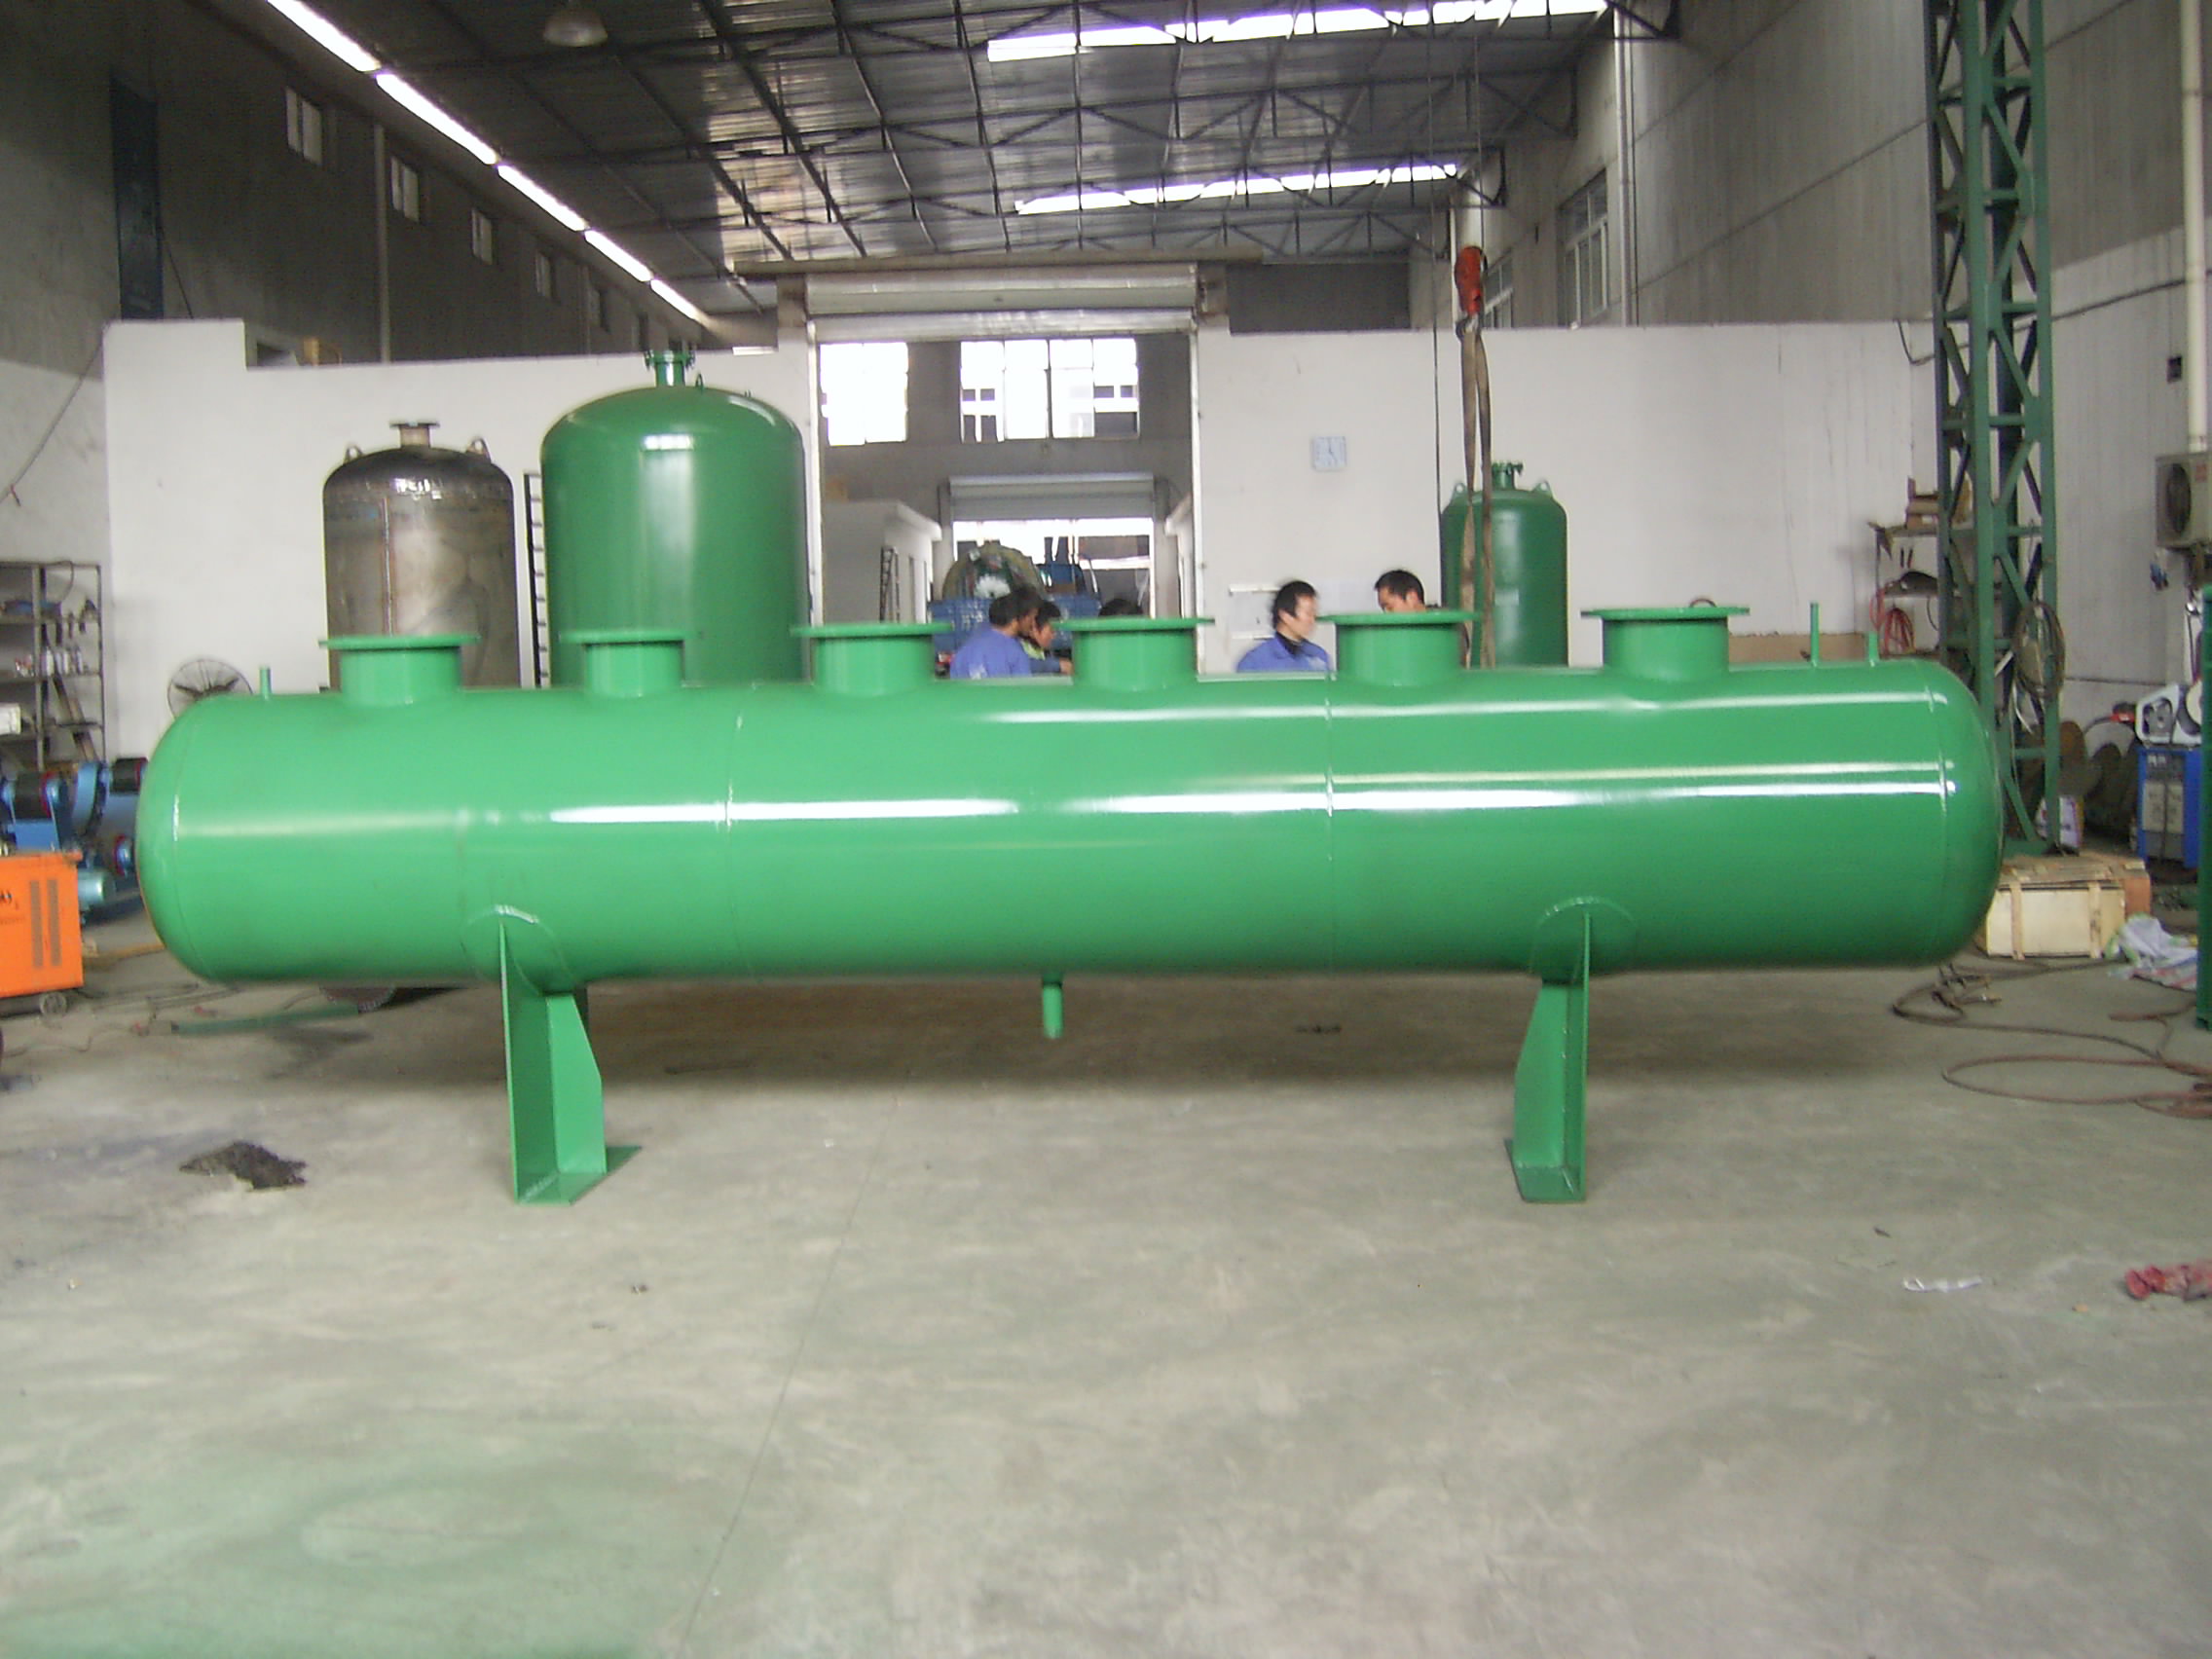 分集水器,空调系统上主要的分配管路的设备,江苏地区的主要供应商南京恒恩环境